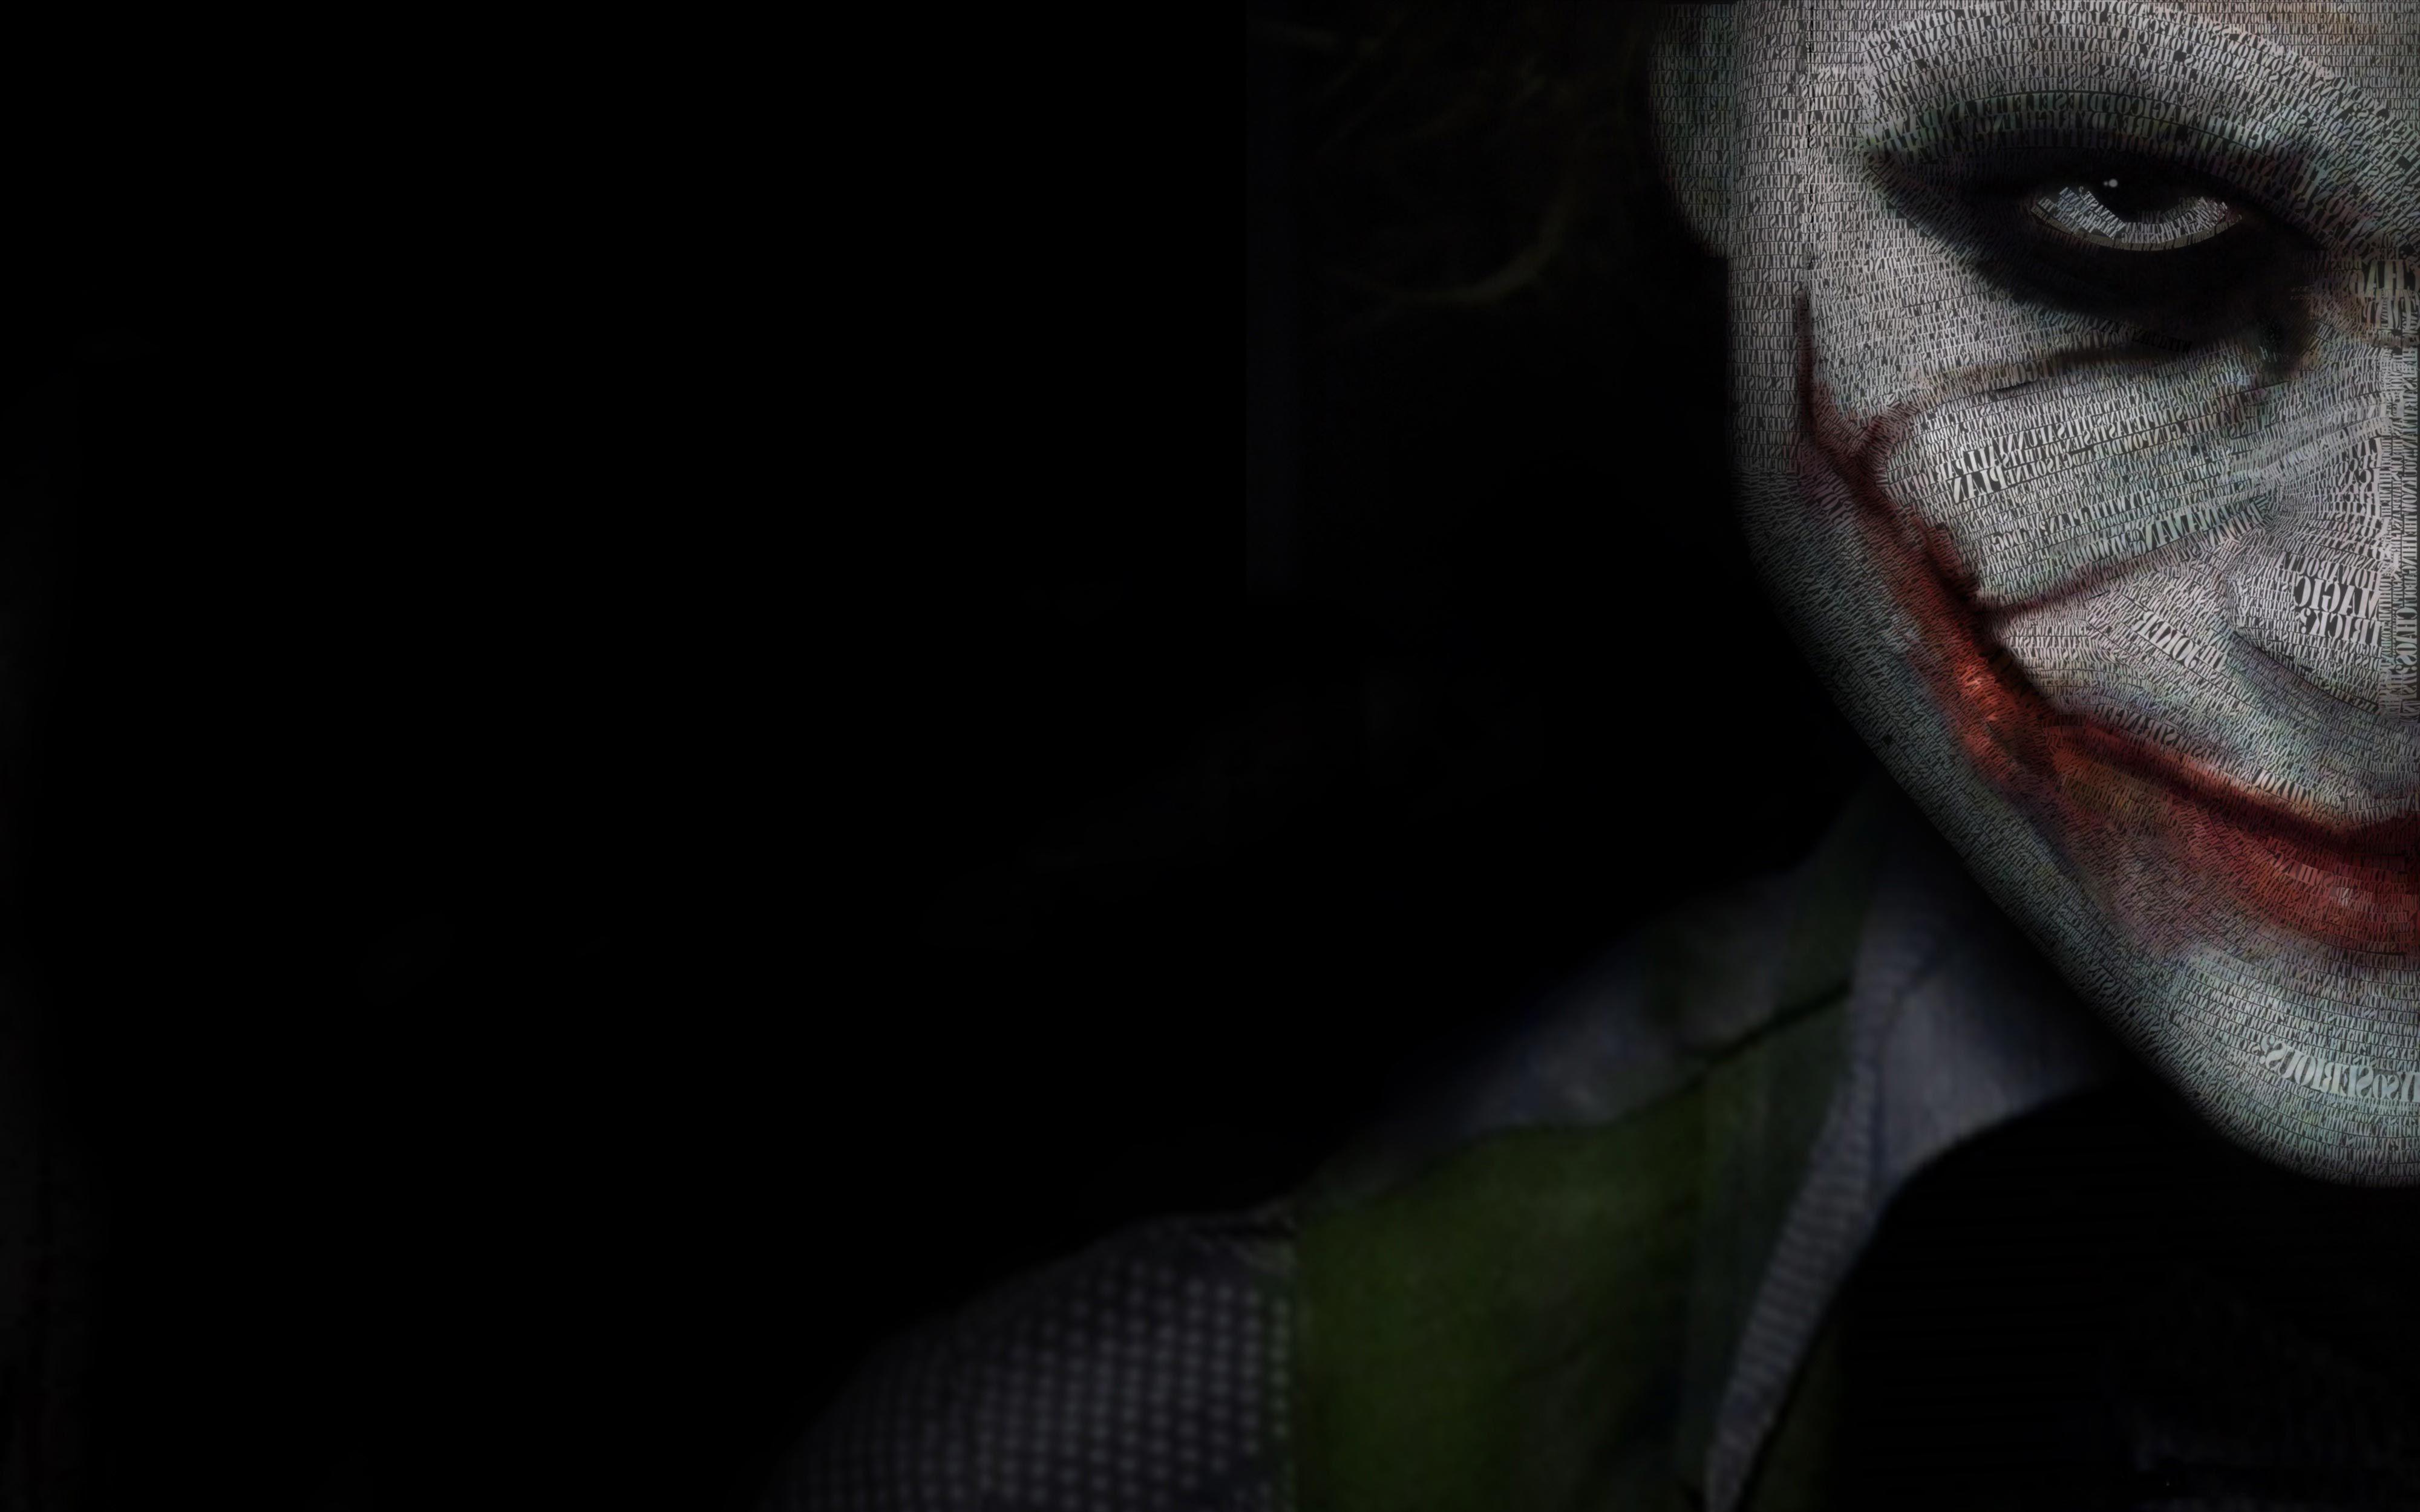 4000x2500 Hình nền Joker 4K Ultra HD - Hình nền Joker 4K Ultra HD miễn phí hàng đầu - vào năm 2020. Hình nền Joker HD, Ảnh Joker, Hình nền Joker